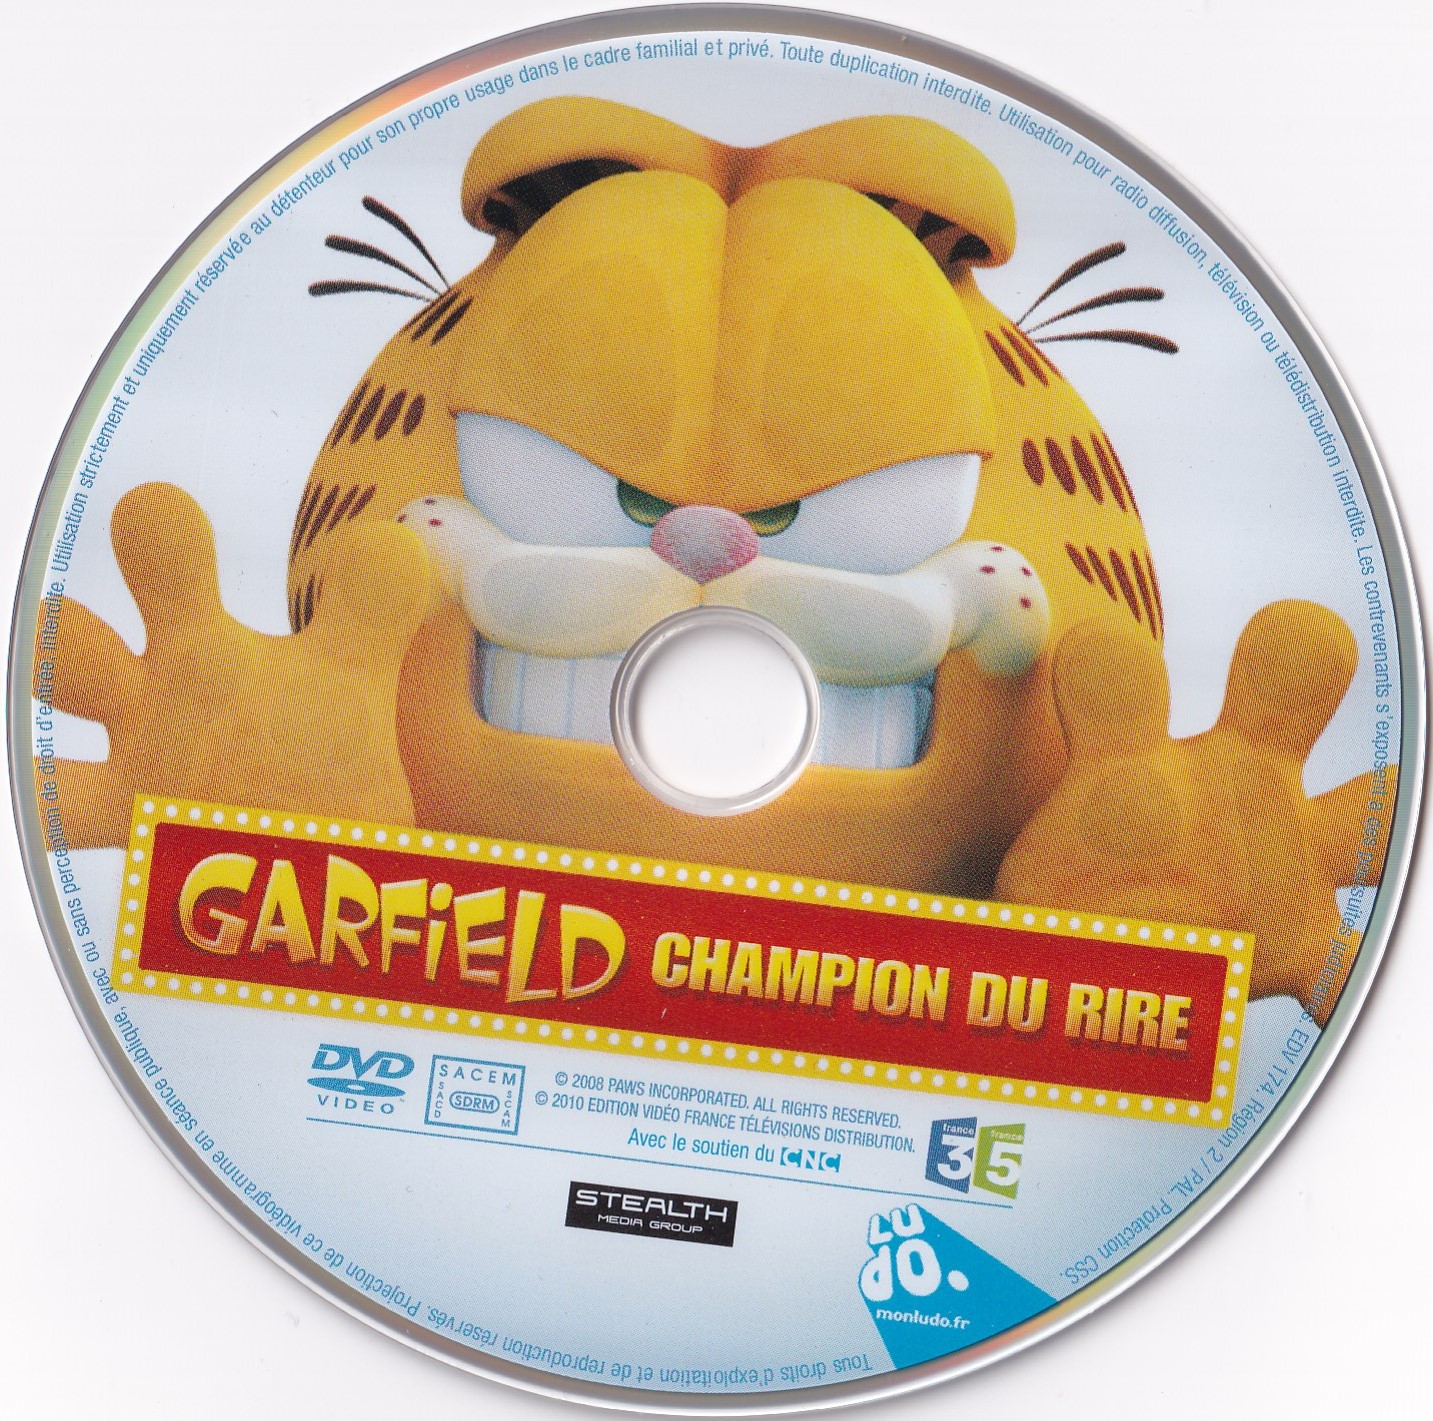 Garfield Champion du Rire